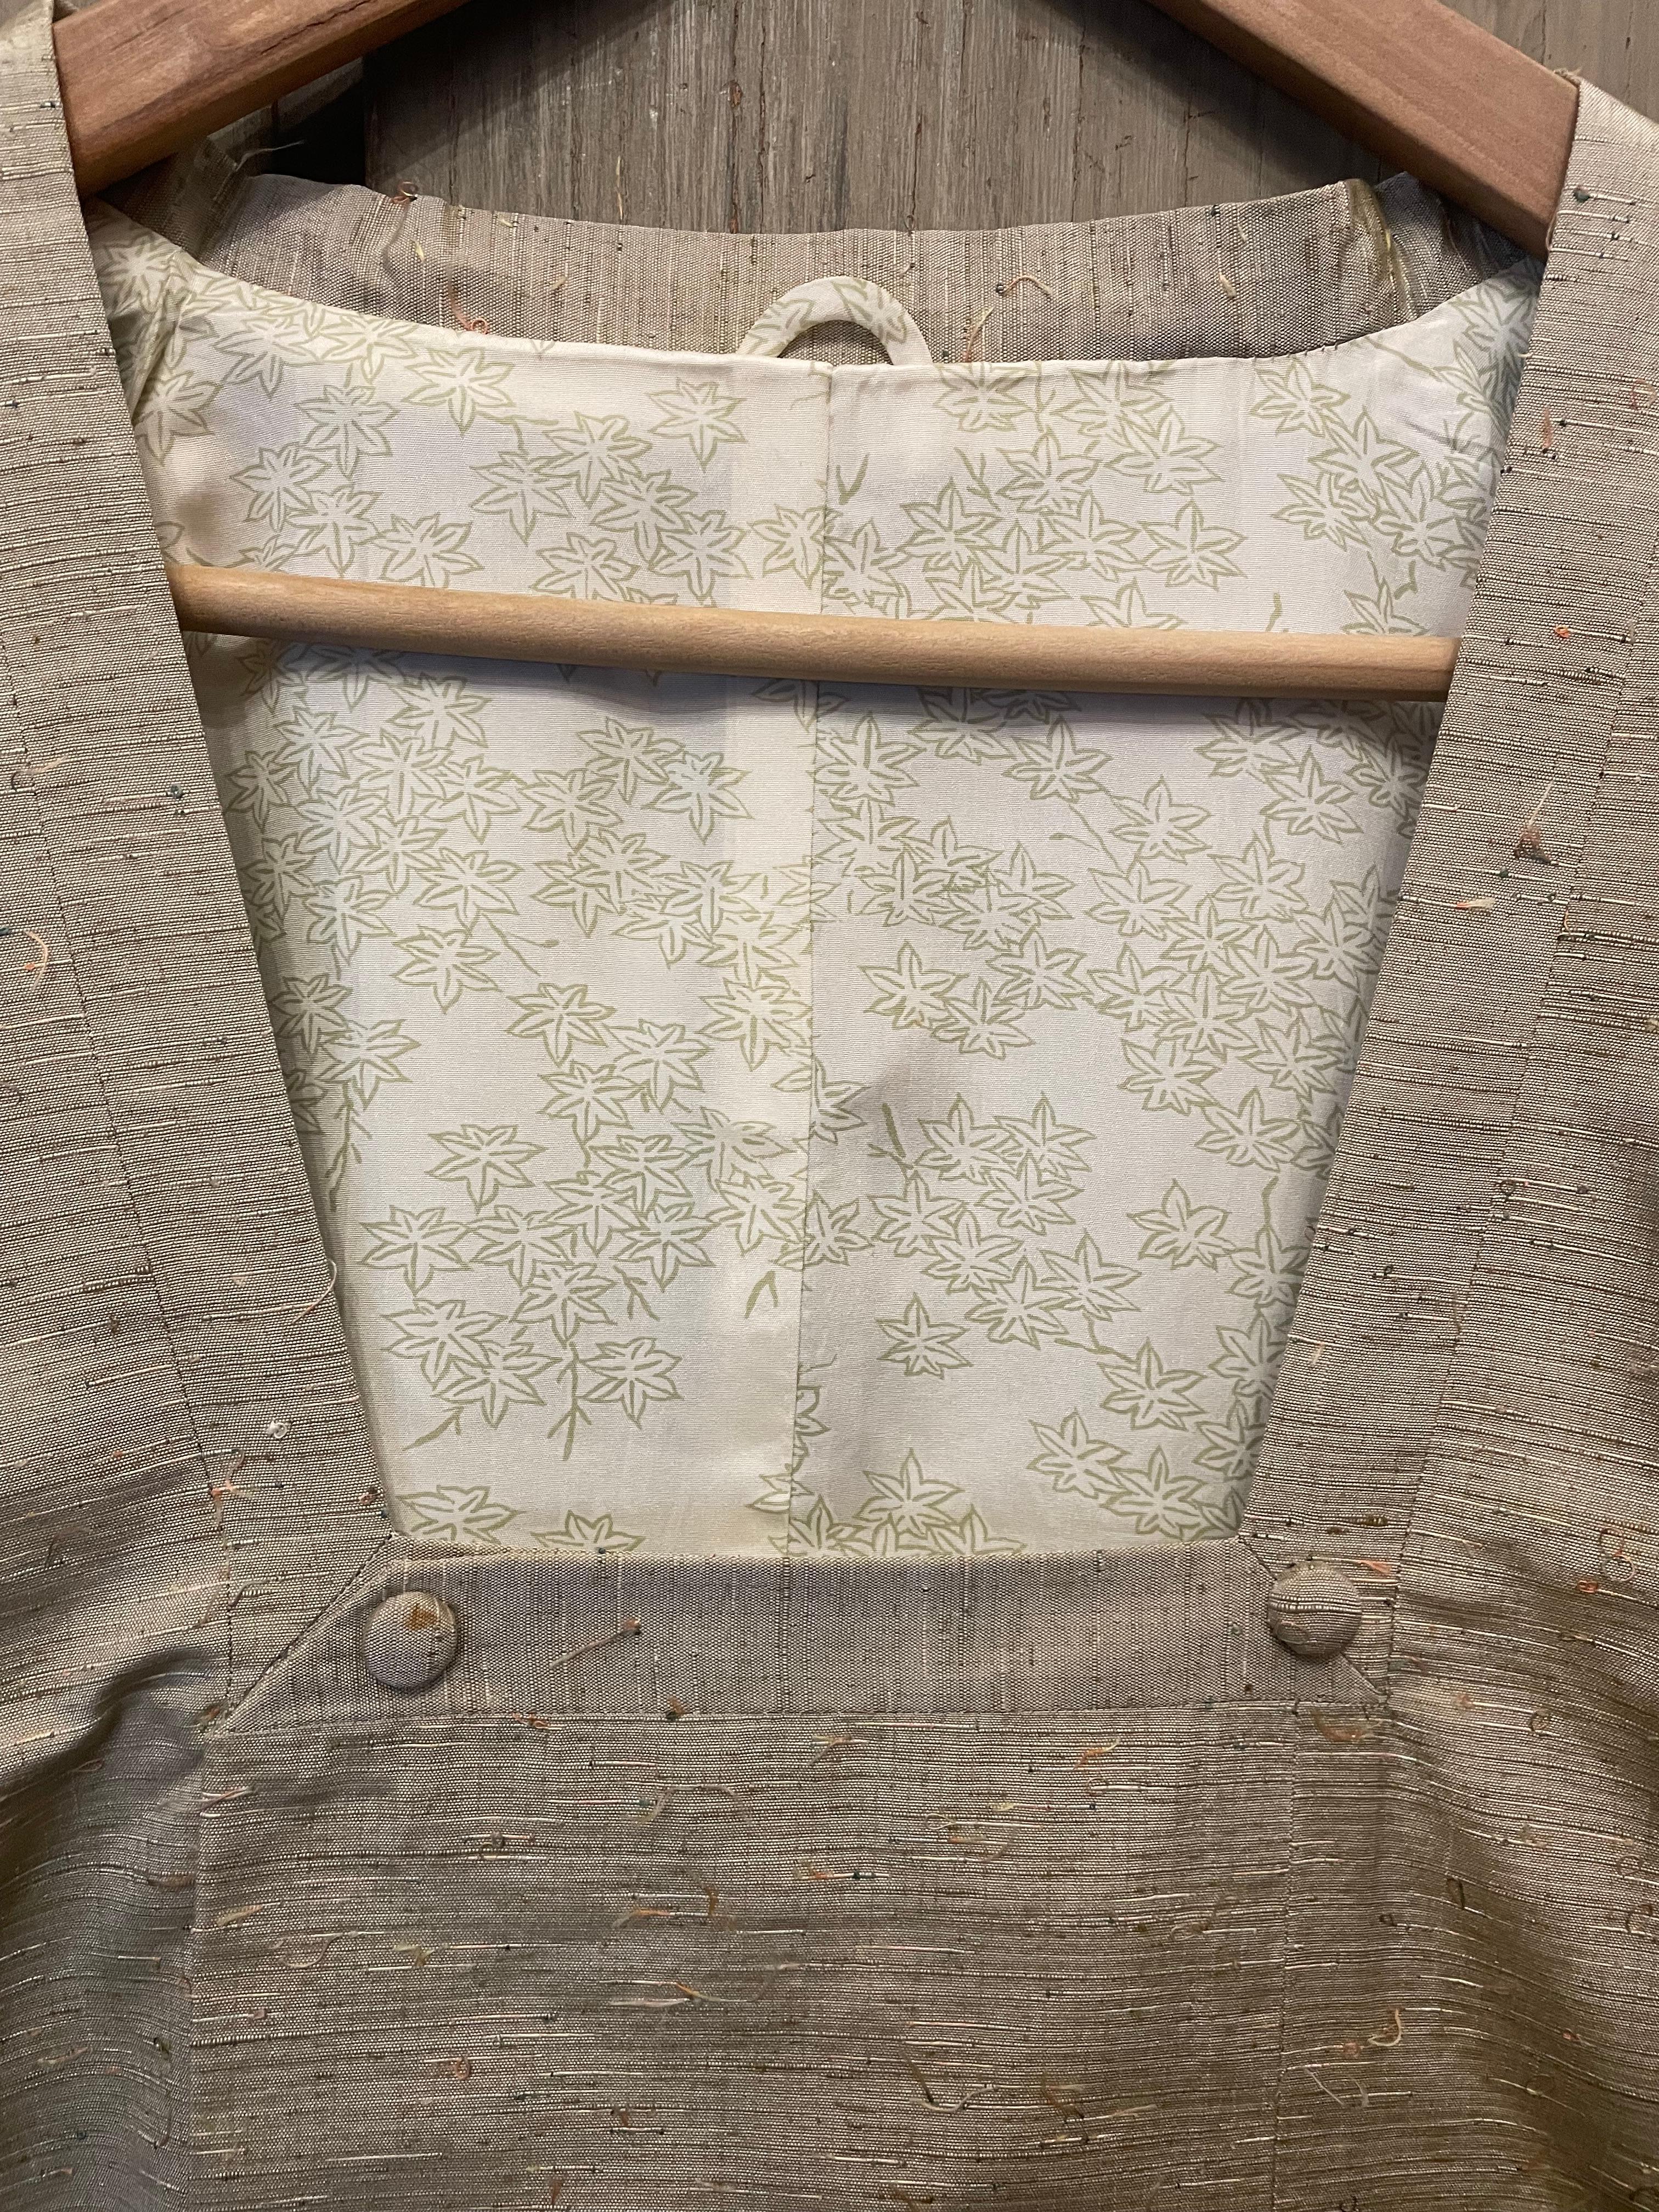 Il s'agit d'une veste en soie japonaise appelée Michiyuki. 
Il a été fabriqué dans les années 1970. Cette veste Michiyuki possède une poche et des ceintures à l'intérieur.
Elle n'est pas réversible. 

Dimensions :
Hauteur totale 126 cm
Largeur